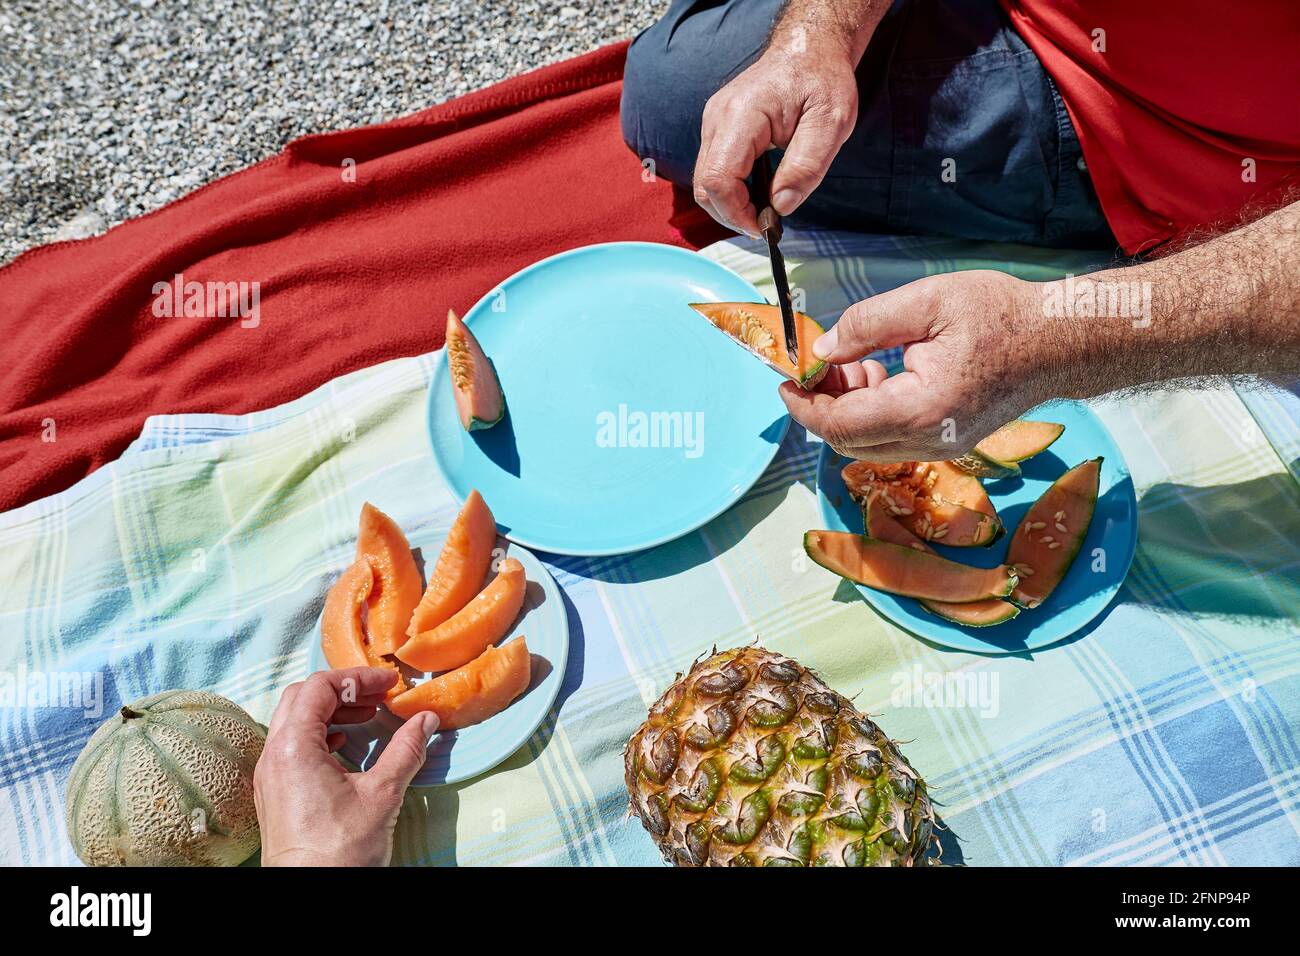 Ehepaar mittleren Alters bei einem Picknick am Meer mit frischen exotischen Früchten. Mann schneidet eine Melone. Frühling, Sommer Lifestyle, Liebe Dating-Konzept. Stockfoto